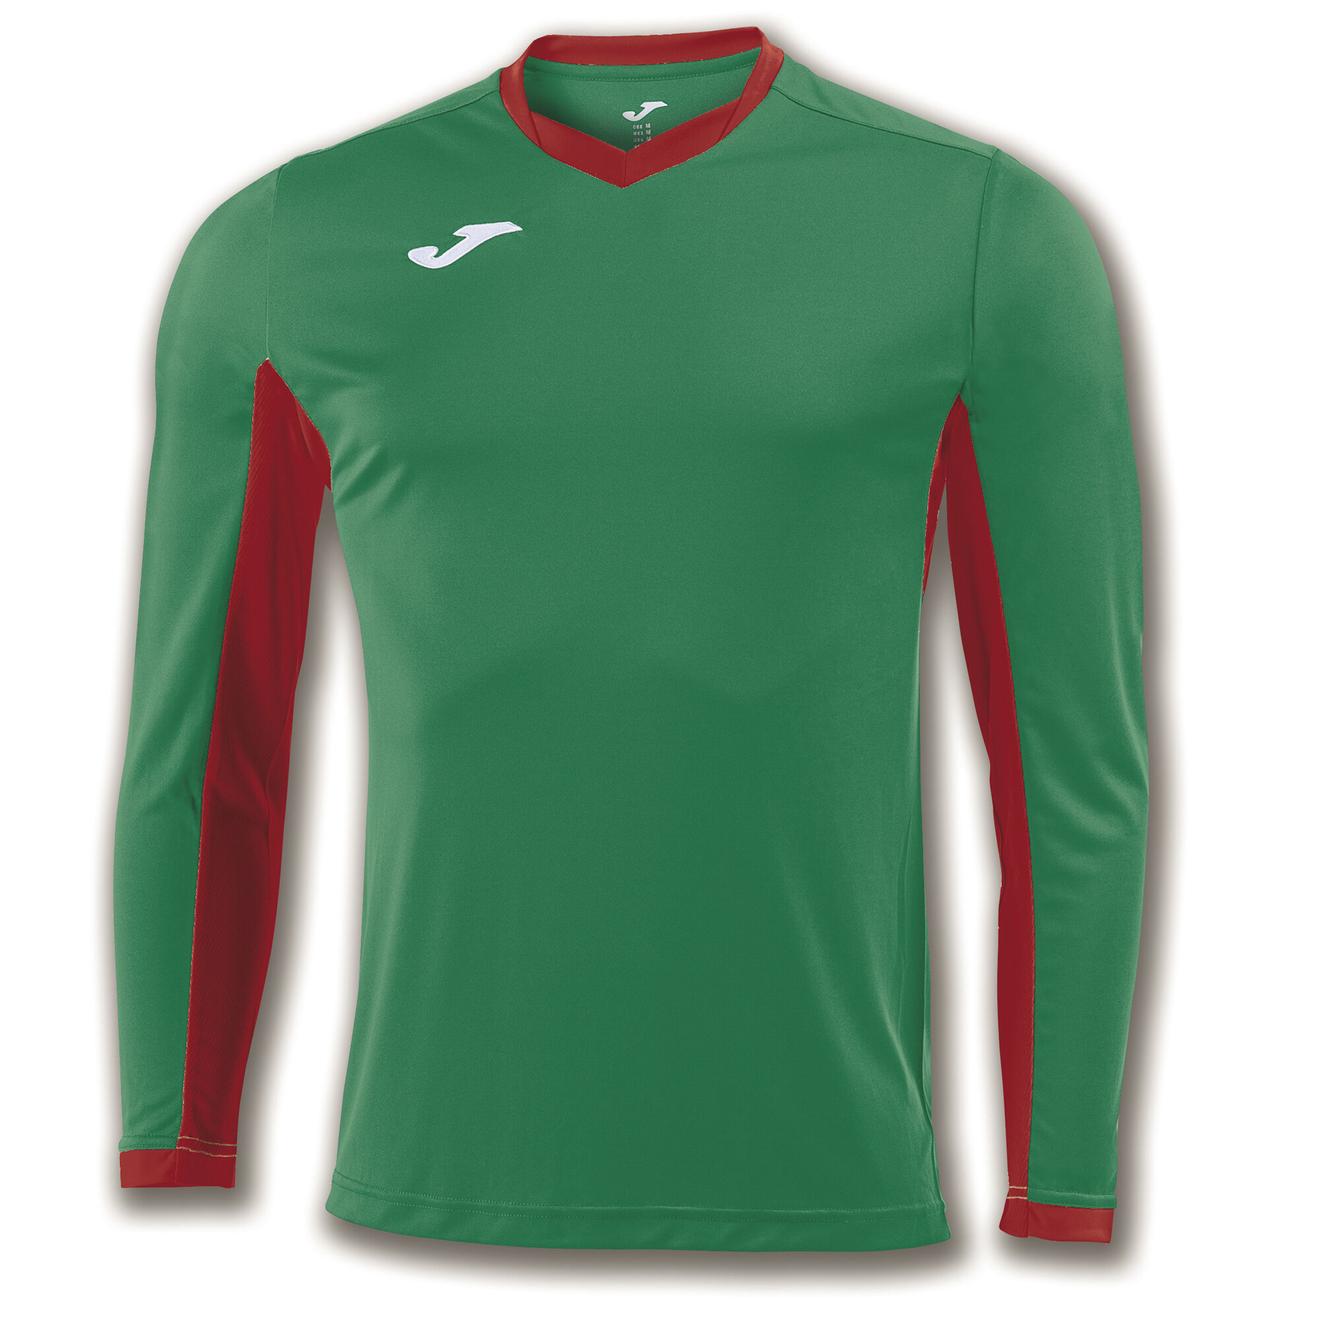 Oferta de Camiseta manga larga hombre Championship IV verde rojo por 6,24€ en Joma